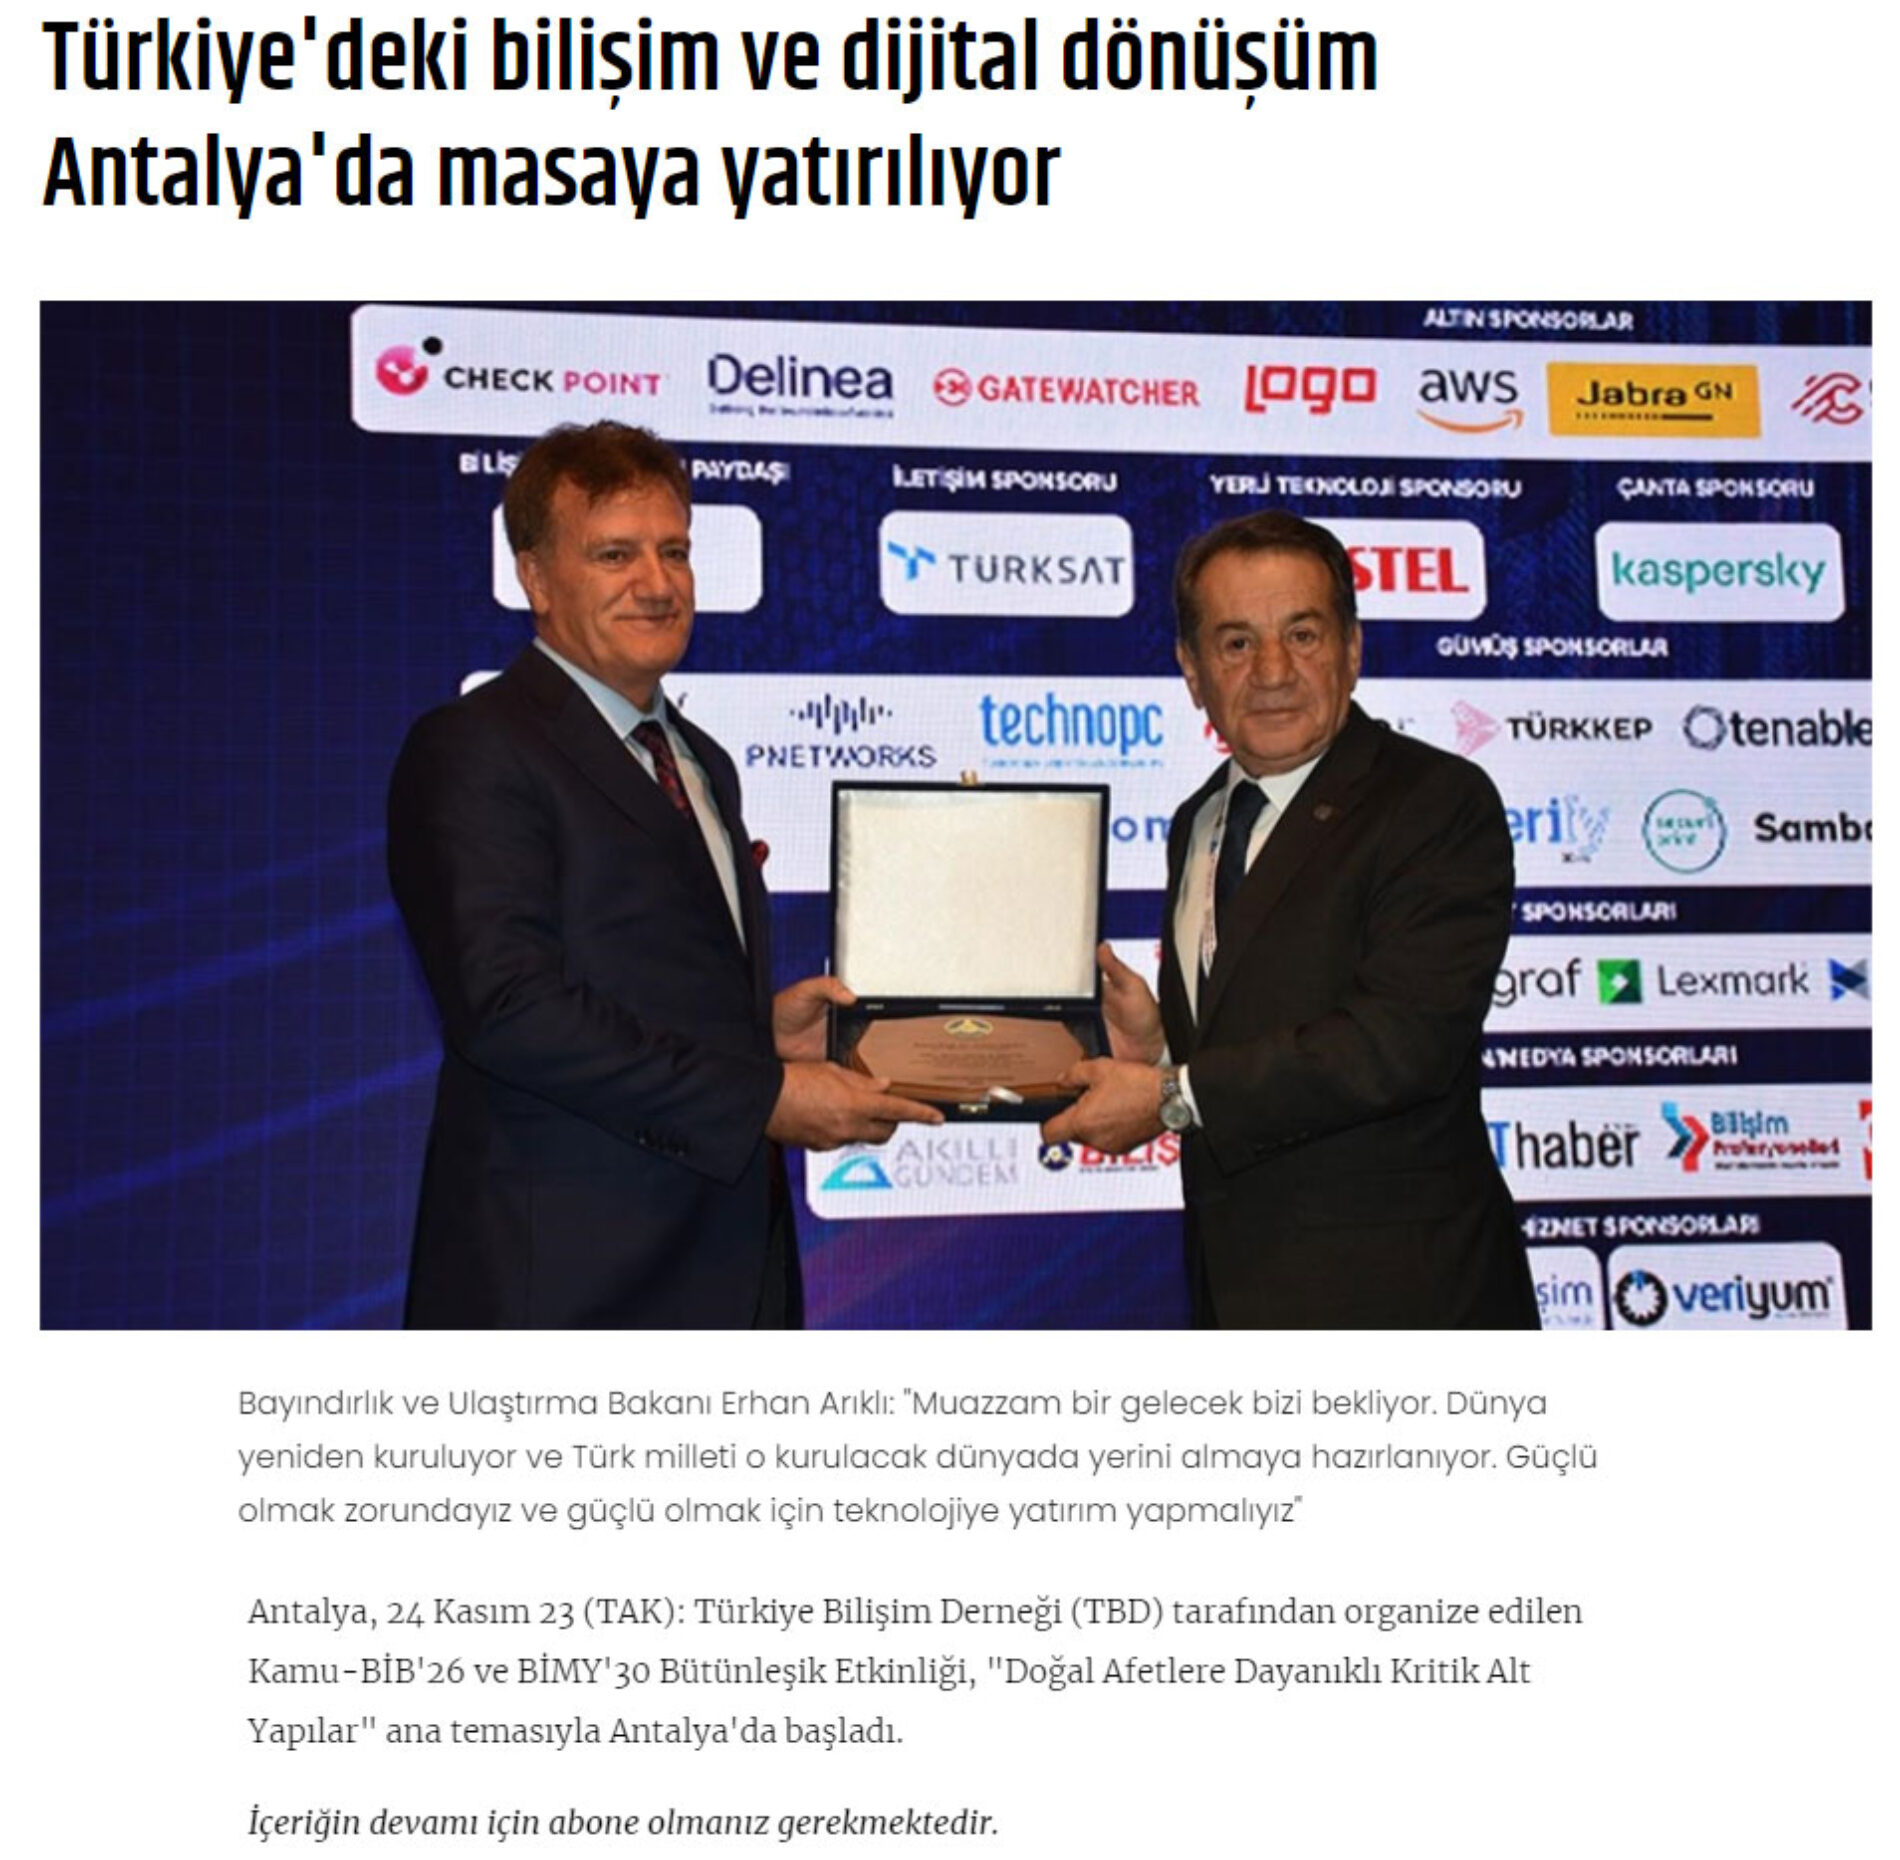 Türkiye’deki Bilişim ve Dijital Dönüşüm Antalya’da Masaya Yatırılıyor – TÜRK AJANSI KIBRIS